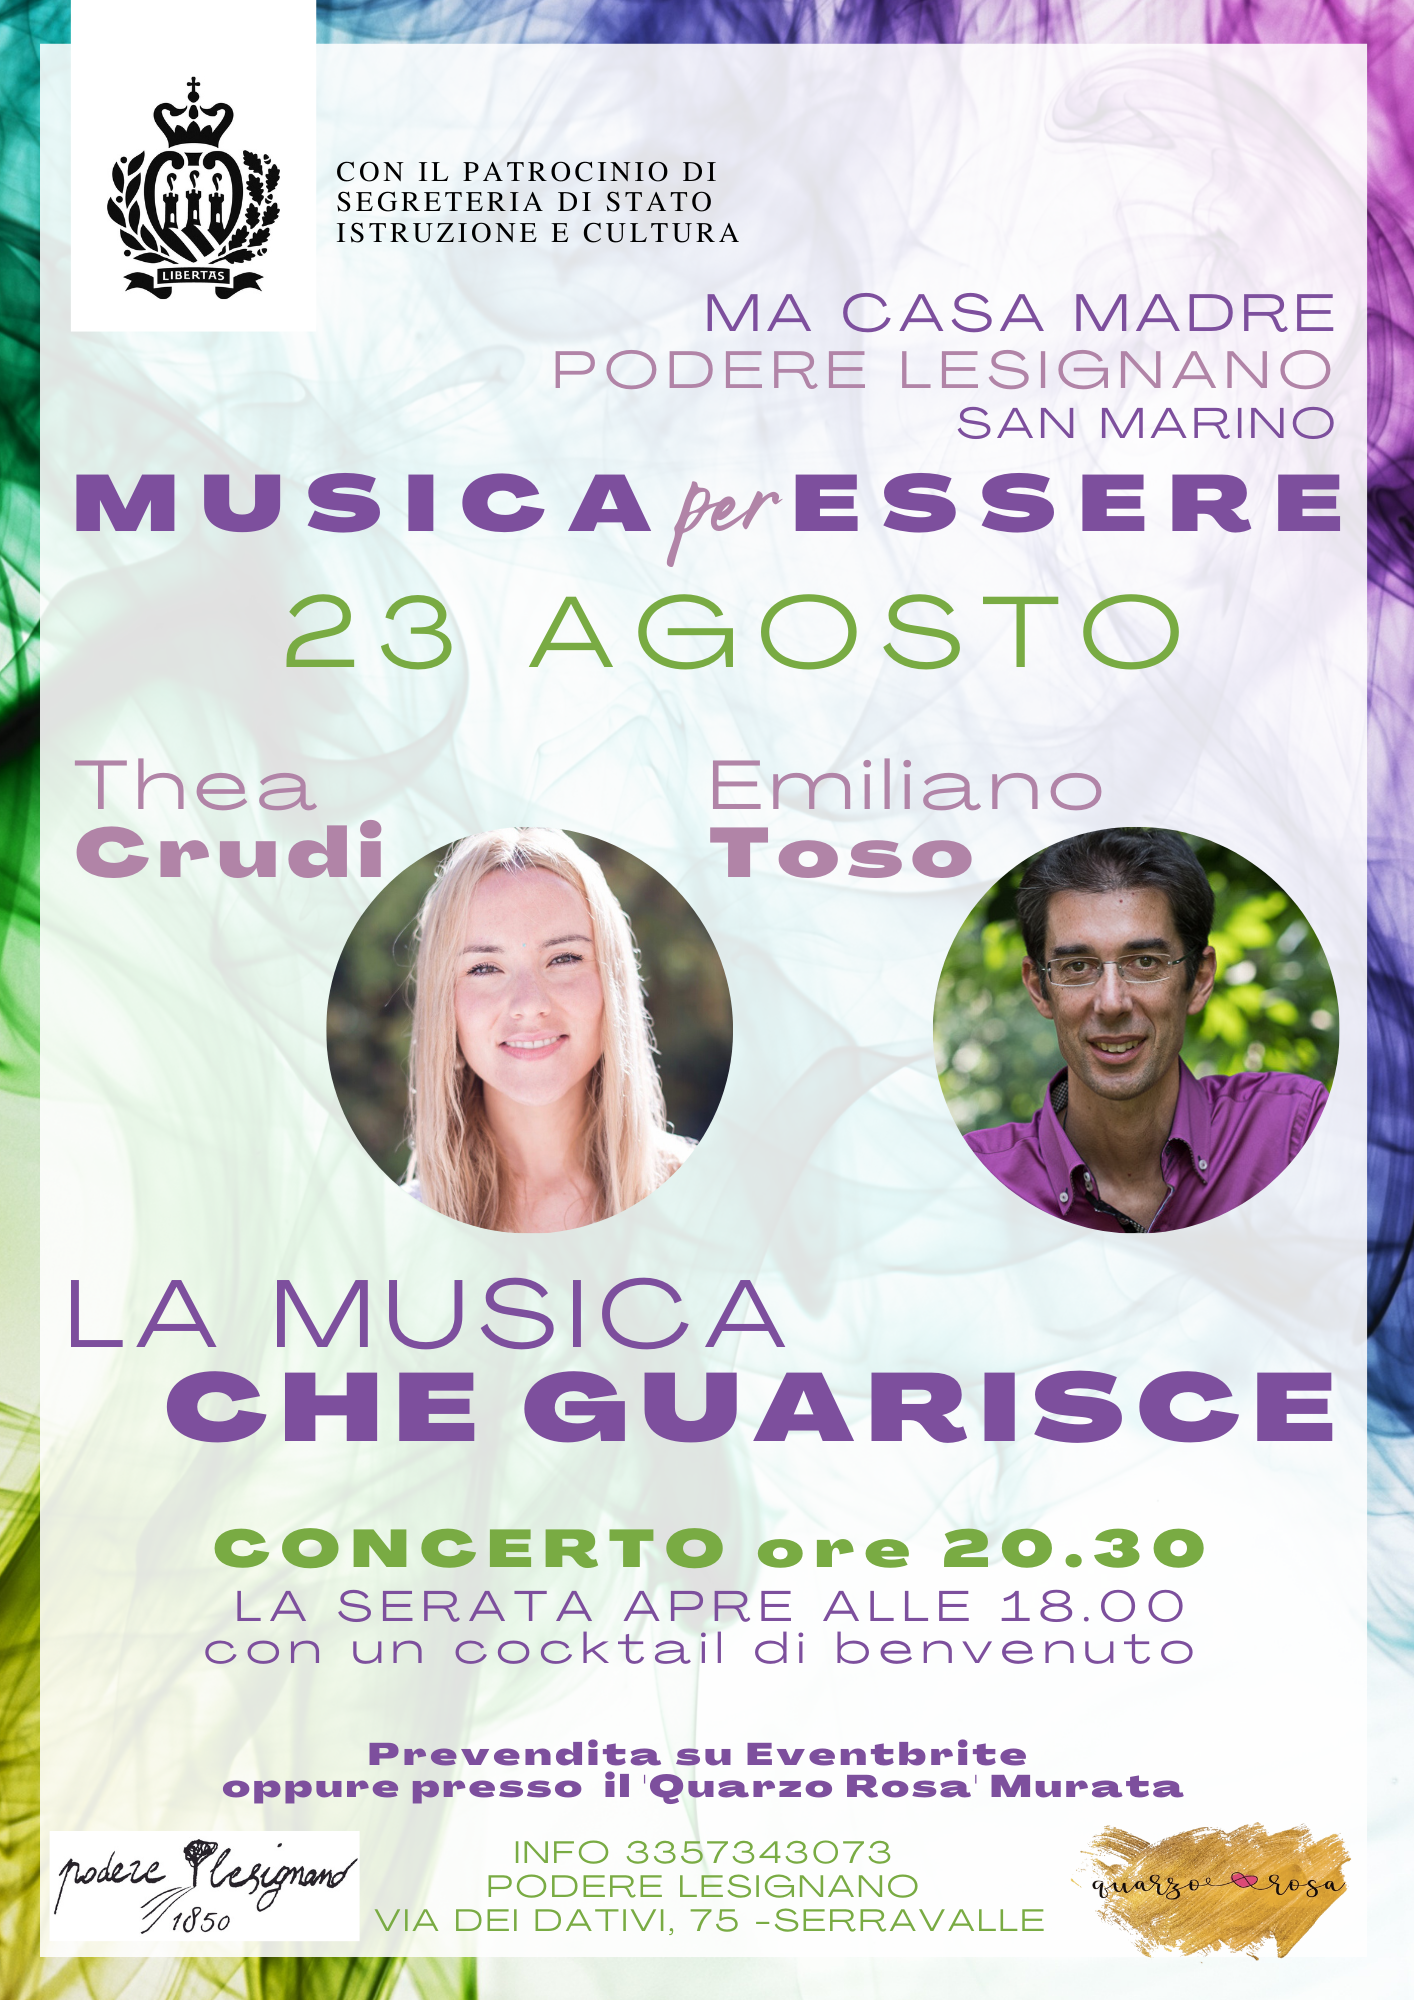 San Marino. Thea Crudi ed Emiliano Toso in concerto al Podere Lesignano